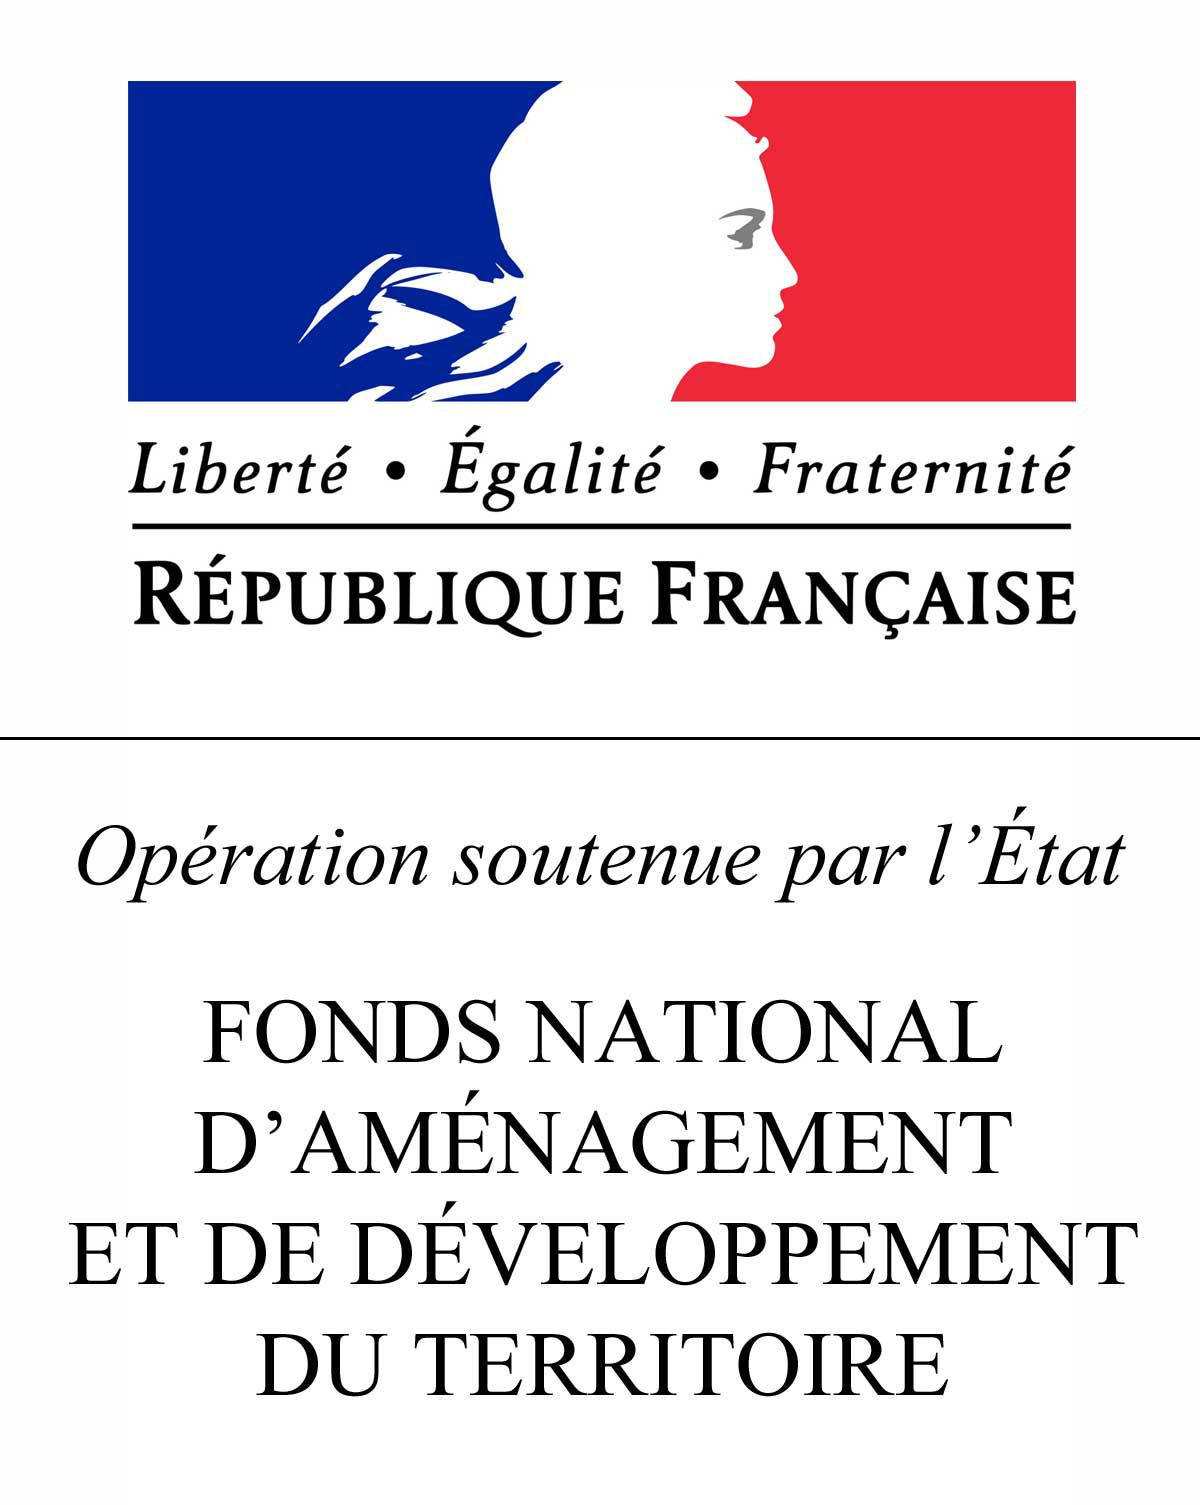 logo drapeau français Marianne fnadt fond national d'aménagement et de développement du territoire